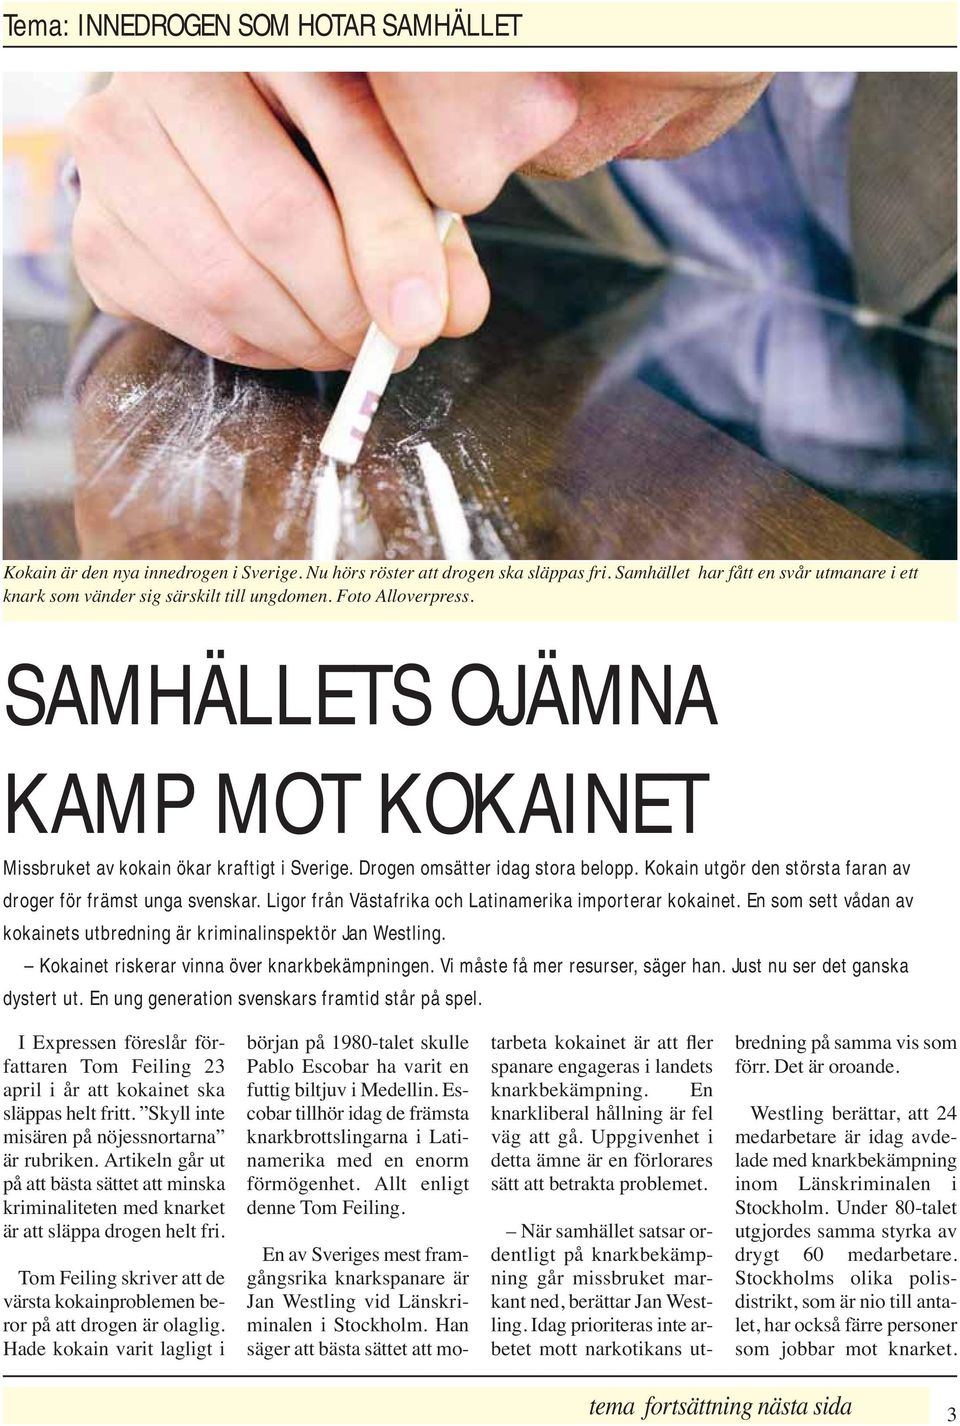 Drogen omsätter idag stora belopp. Kokain utgör den största faran av droger för främst unga svenskar. Ligor från Västafrika och Latinamerika importerar kokainet.